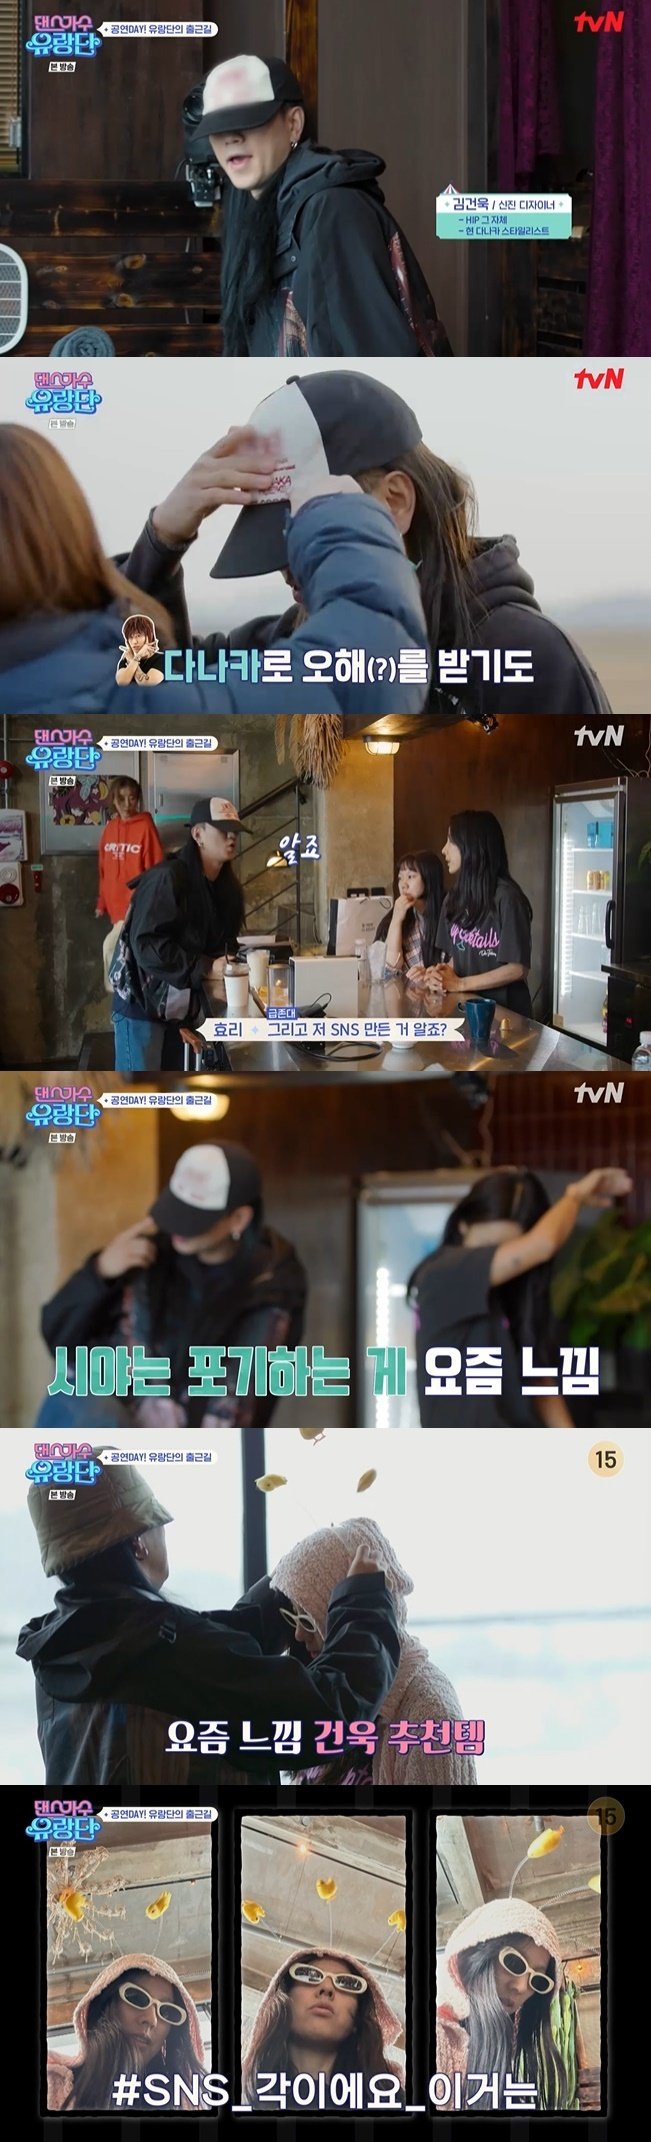 tvN '댄스가수 유랑단' 캡처